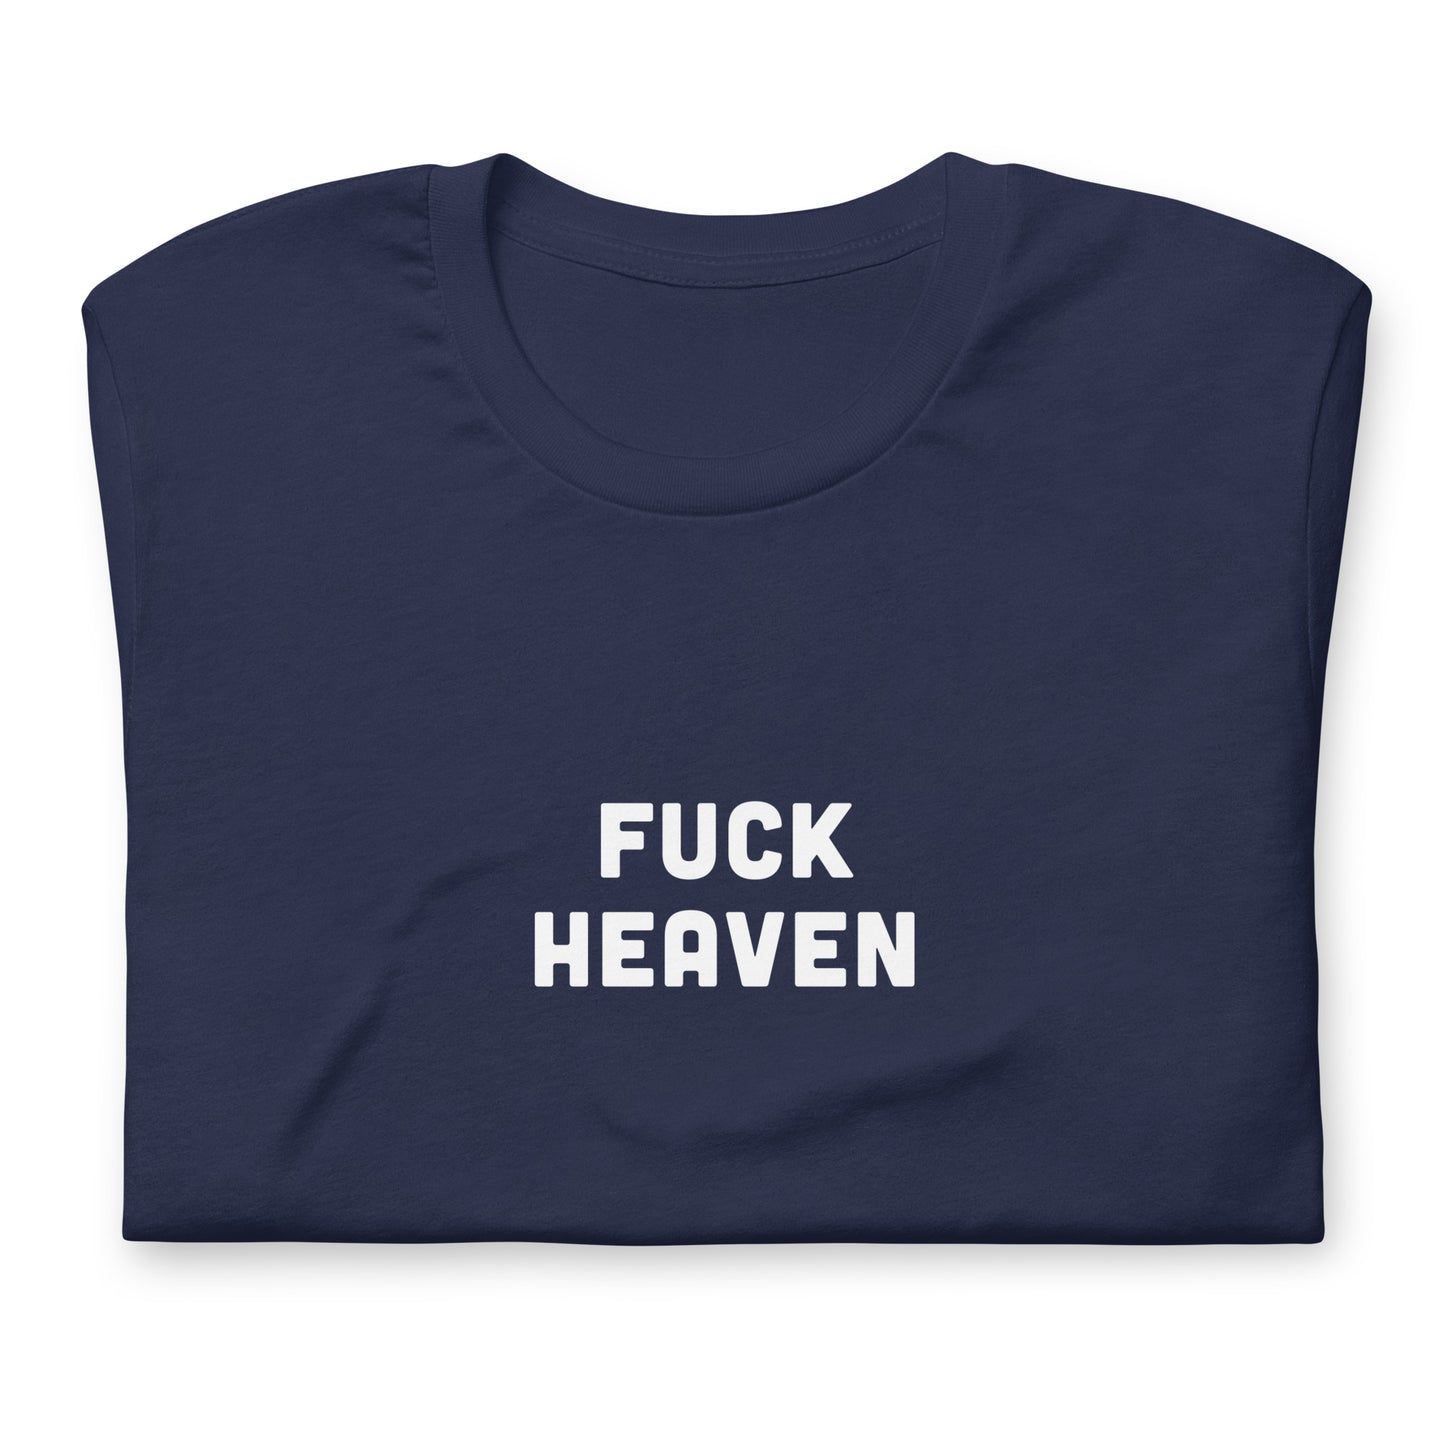 Fuck Heaven T-Shirt Size XL Color Black